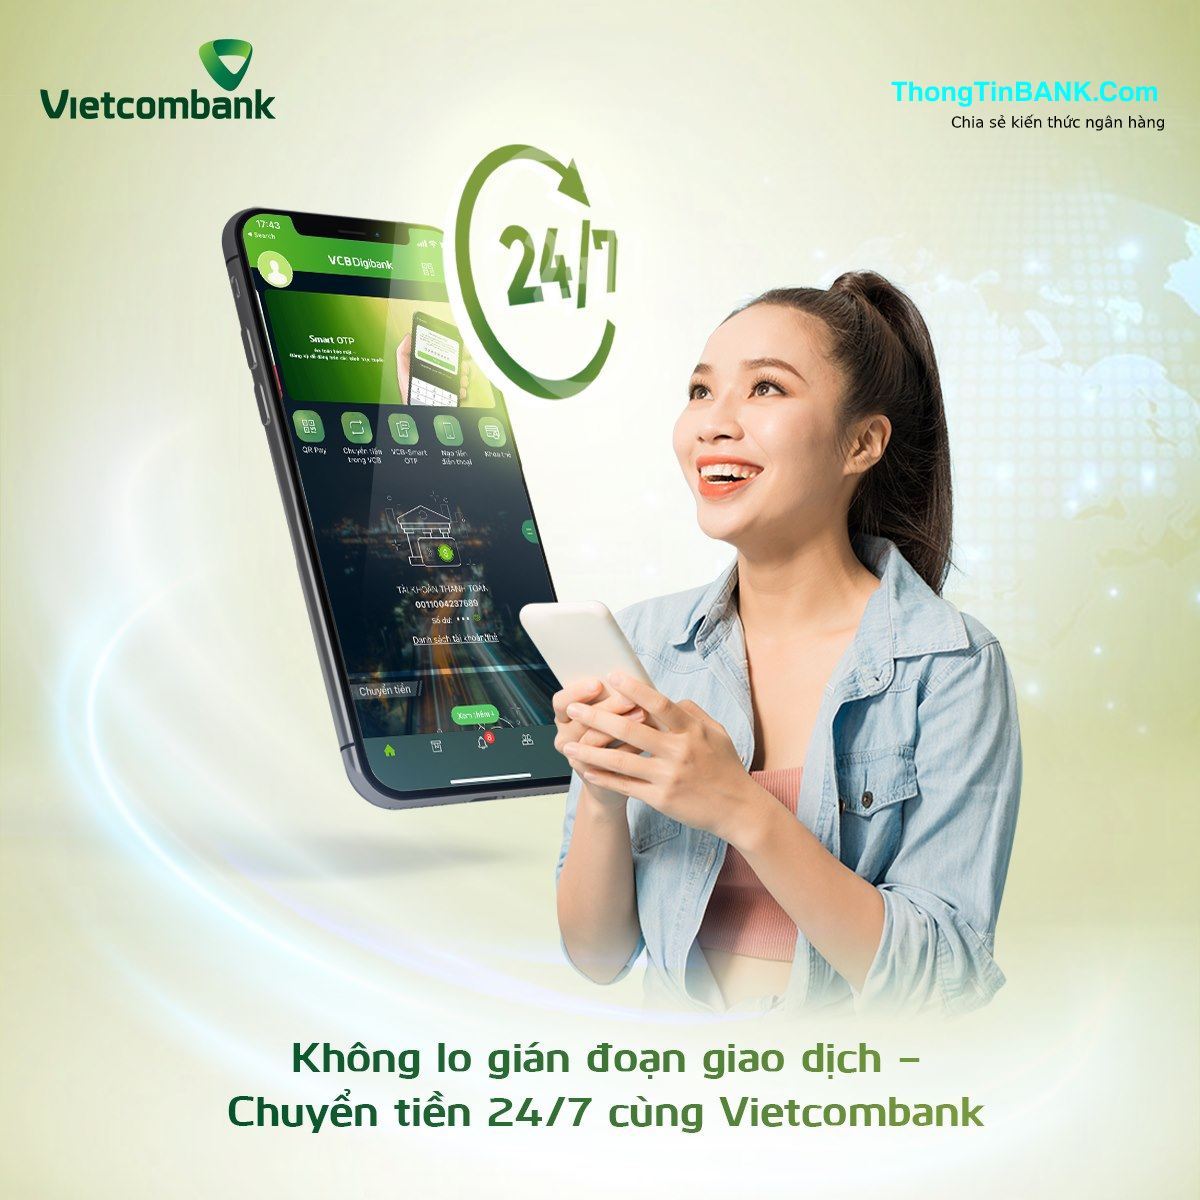 Với VCB Digibank, khách hàng sẽ được trải nghiệm mọi tiện ích tài chính hiện đại